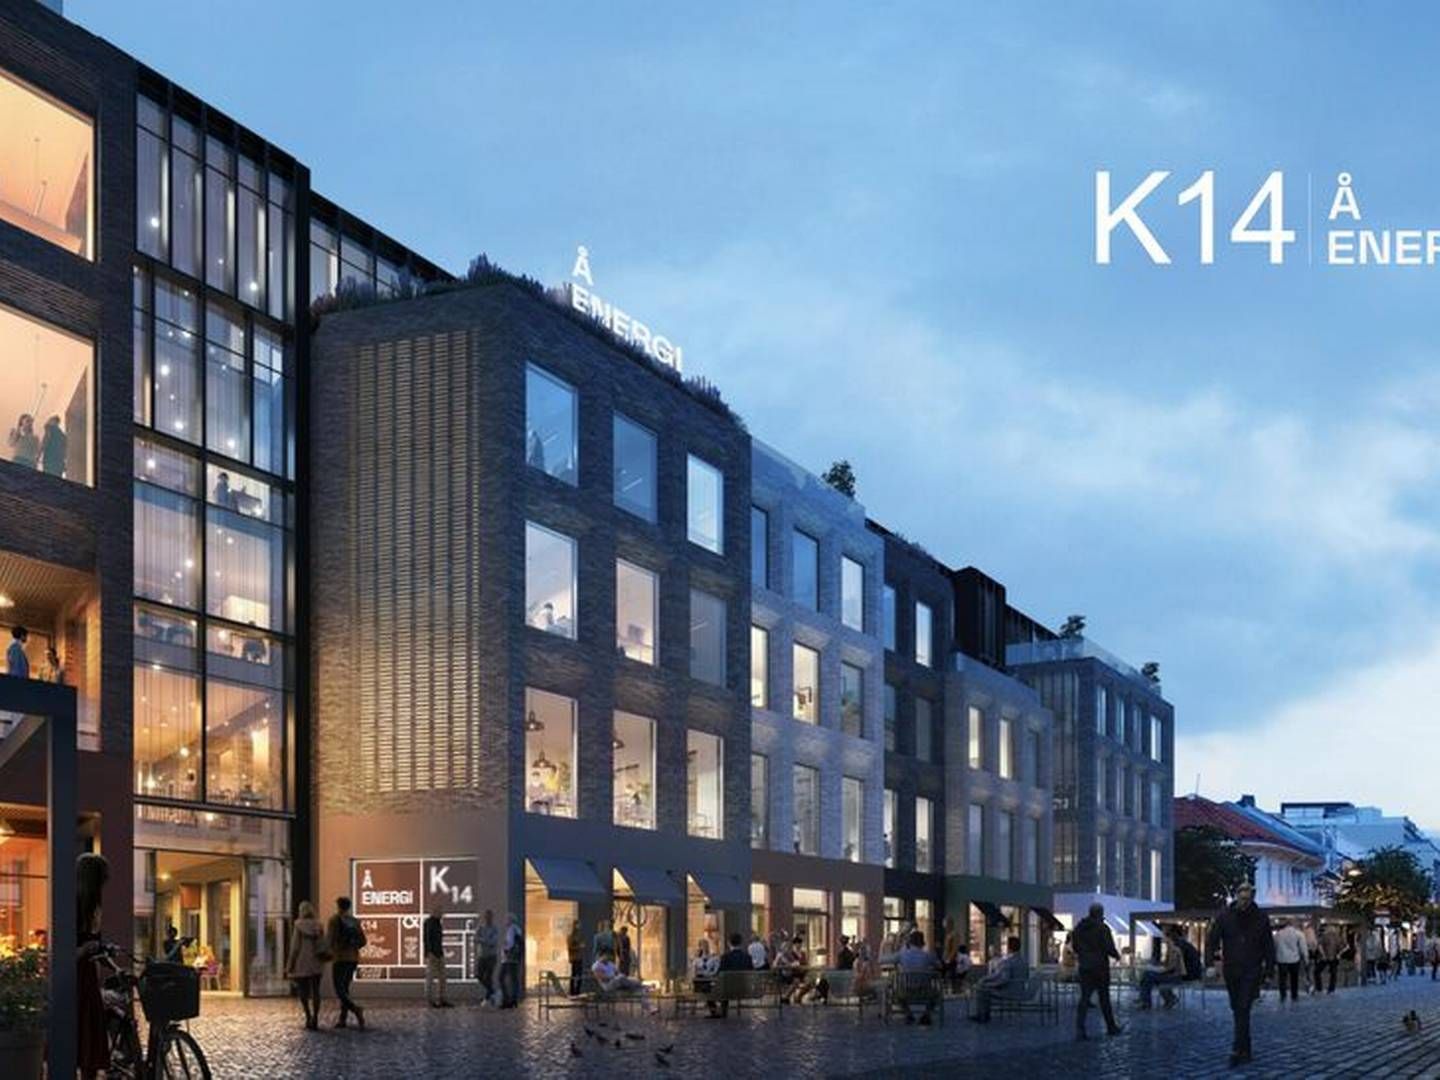 NYTT HJEM: Å Energi bytter kontorer om fire år. Valget har falt på K14, et nytt kontorbygg i Kristiansand sentrum eid av Daland, BRG og J.B. U | Foto: Ark-Net/K14